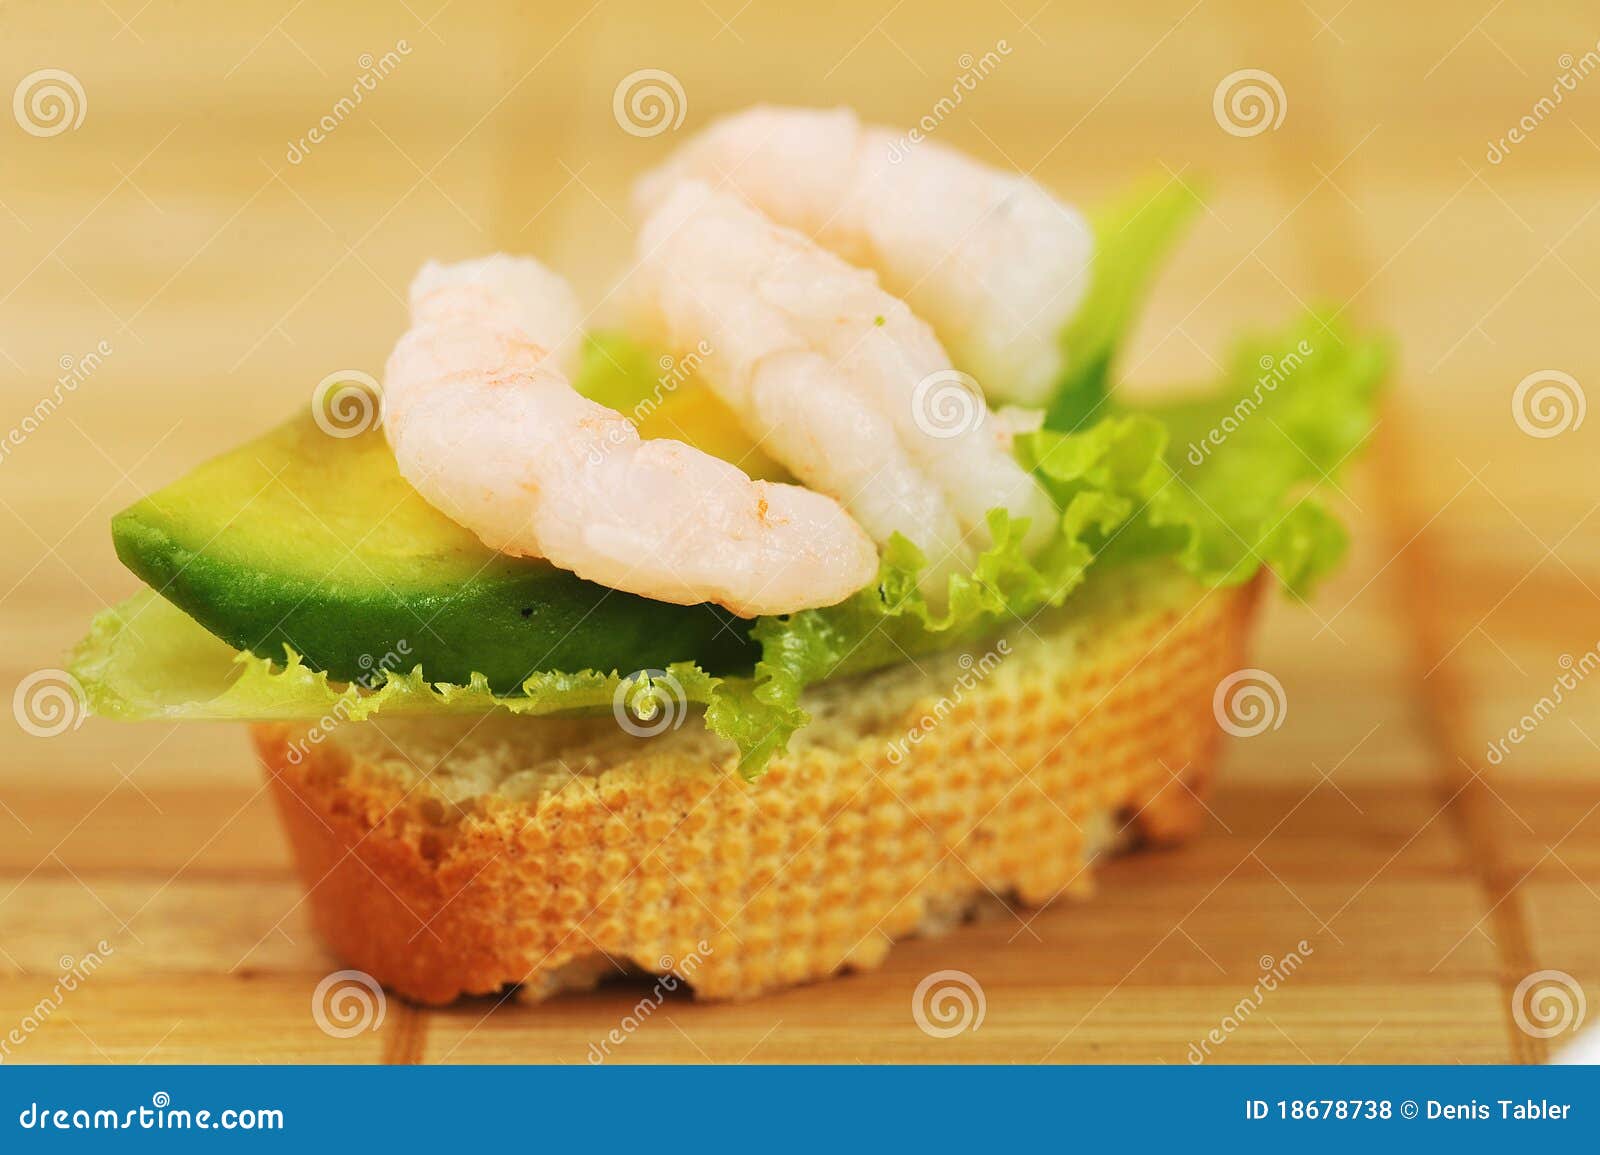 Sandwich mit Garnelen stockfoto. Bild von grün, gegenübergestellt ...